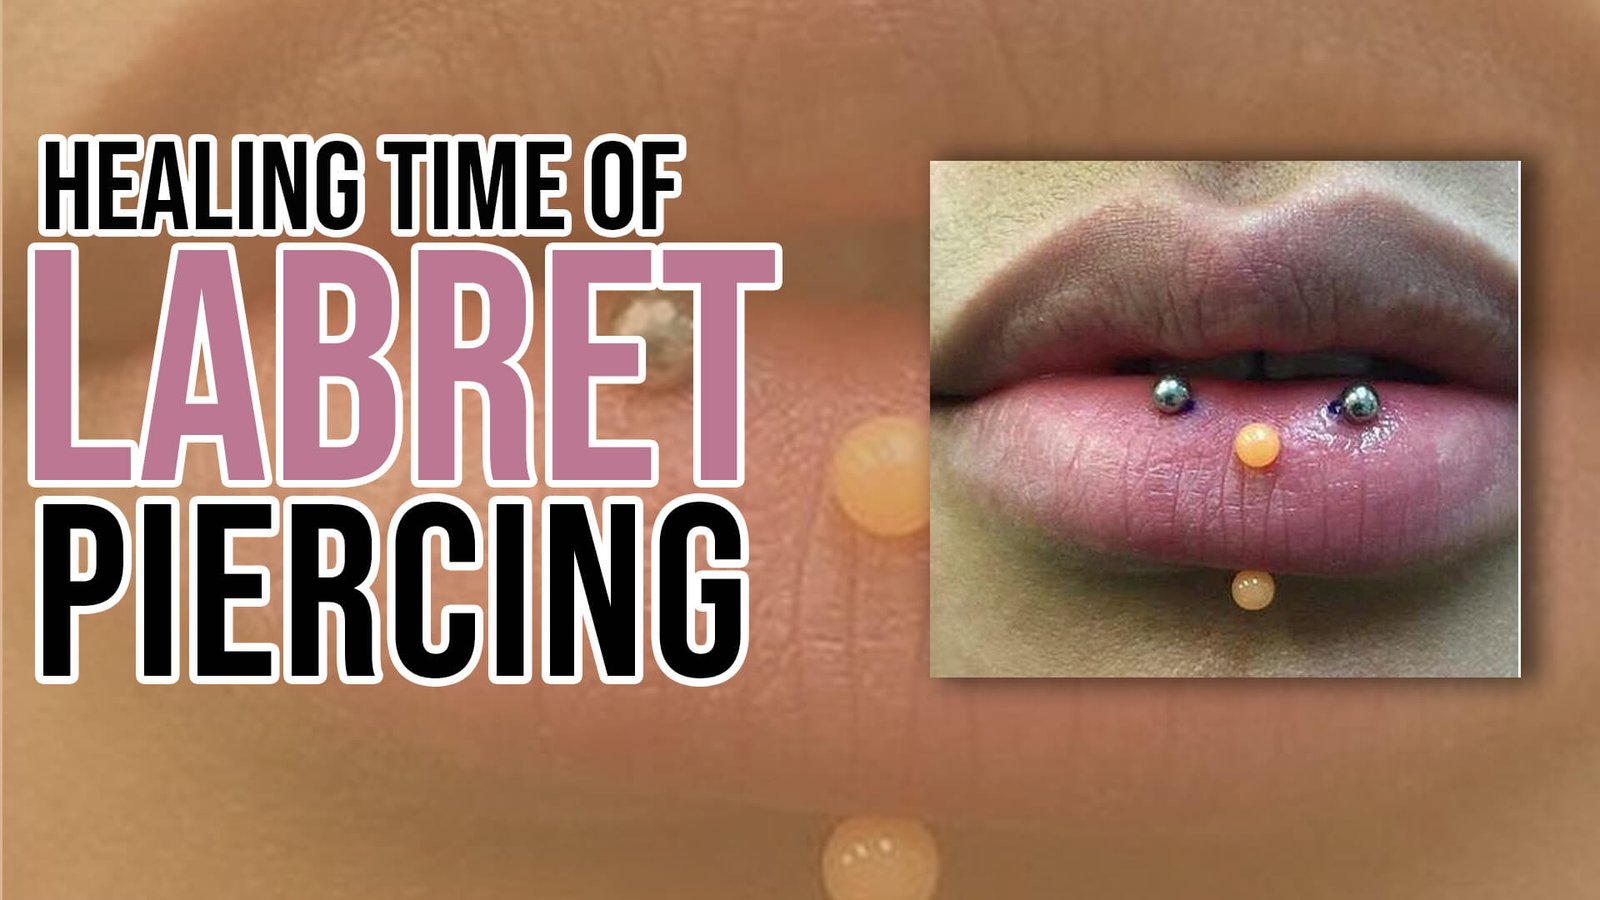 Healing Time of Horizontal Labret Piercing